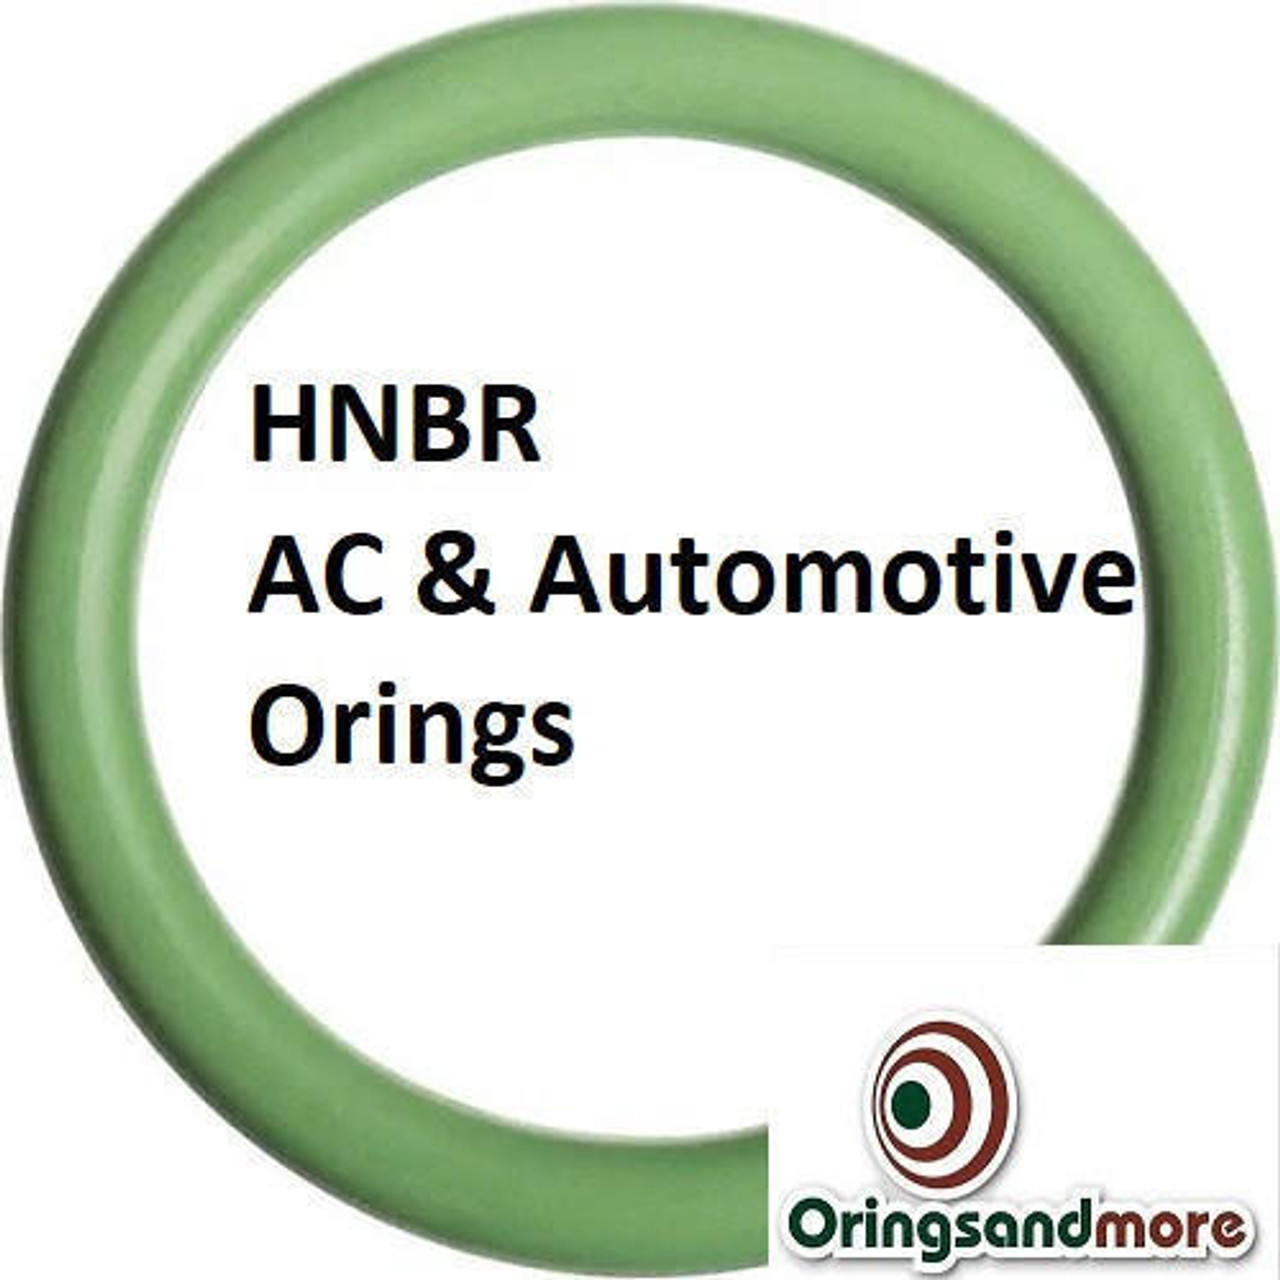 HNBR Orings  # 140-70D Green Minimum 4 pcs